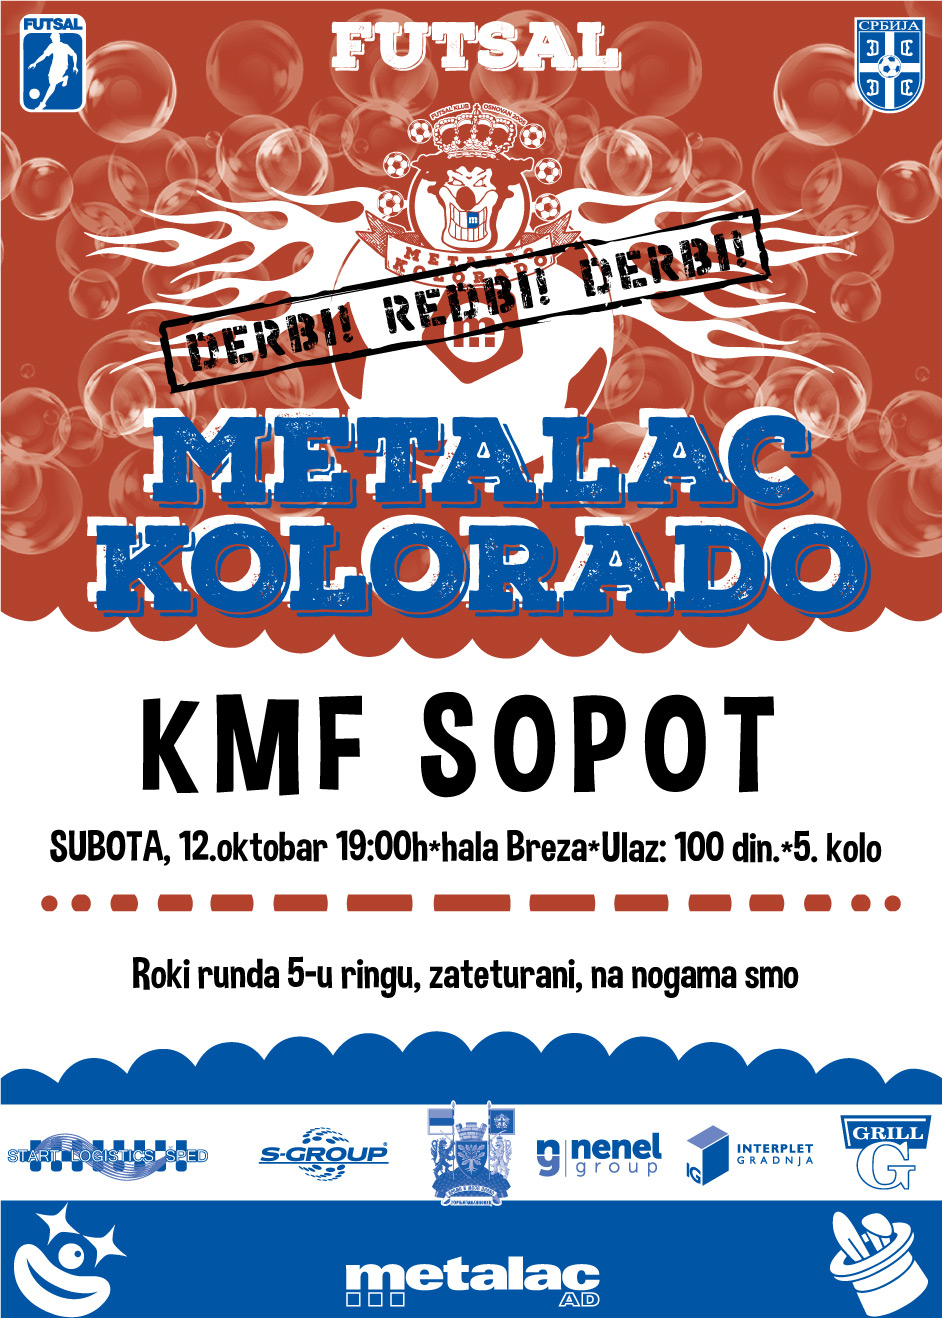 FK Metalac Kolorado